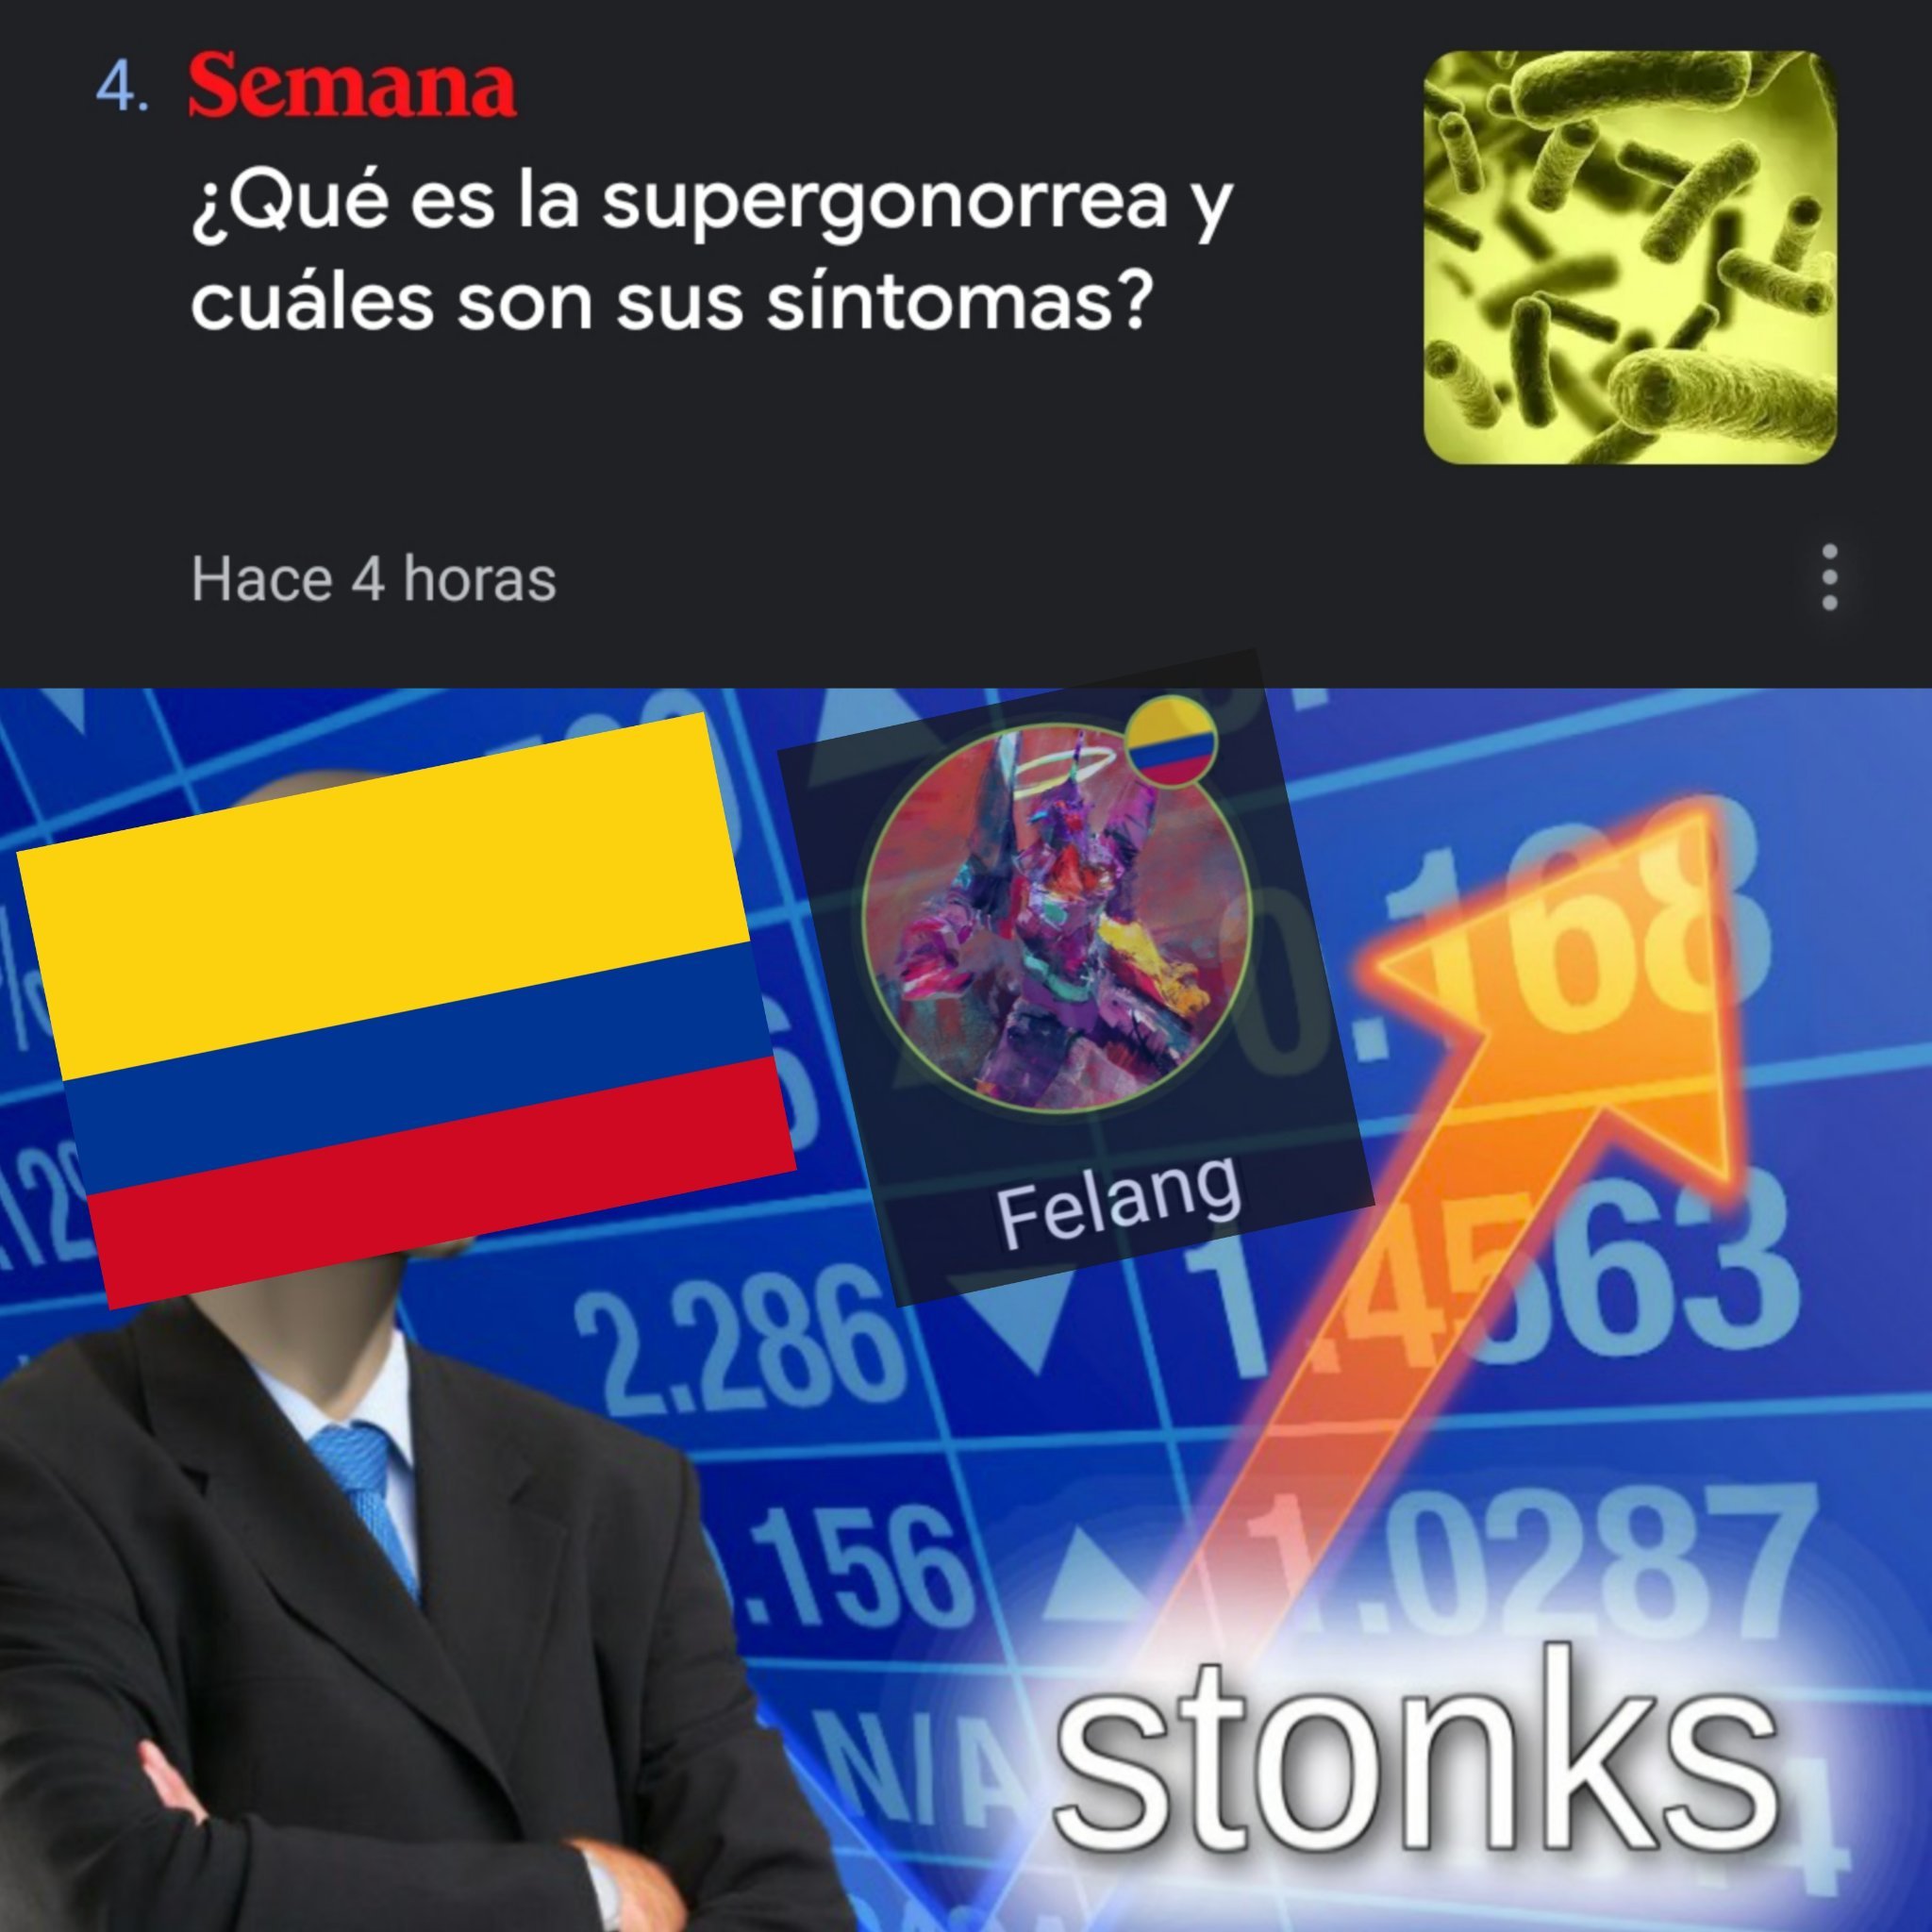 Colombia y sus insultos - meme